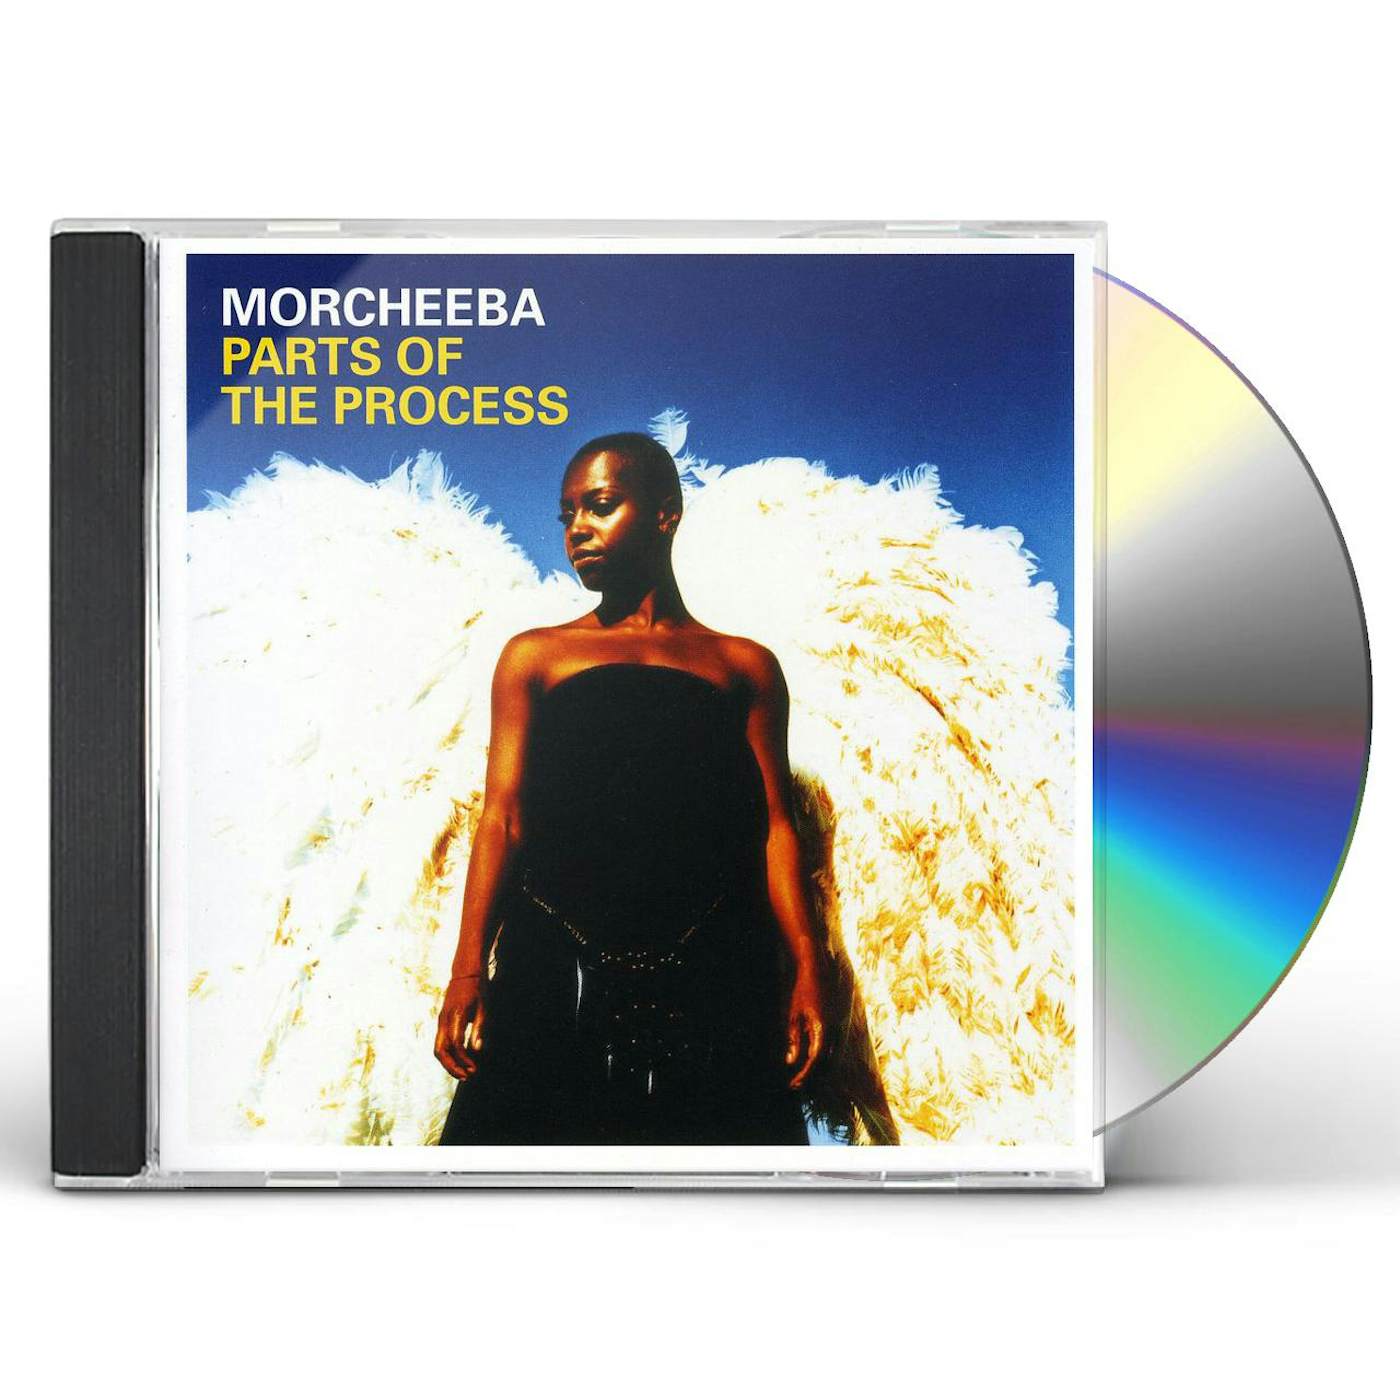 Morcheeba PARTS OF THE PROCESS CD